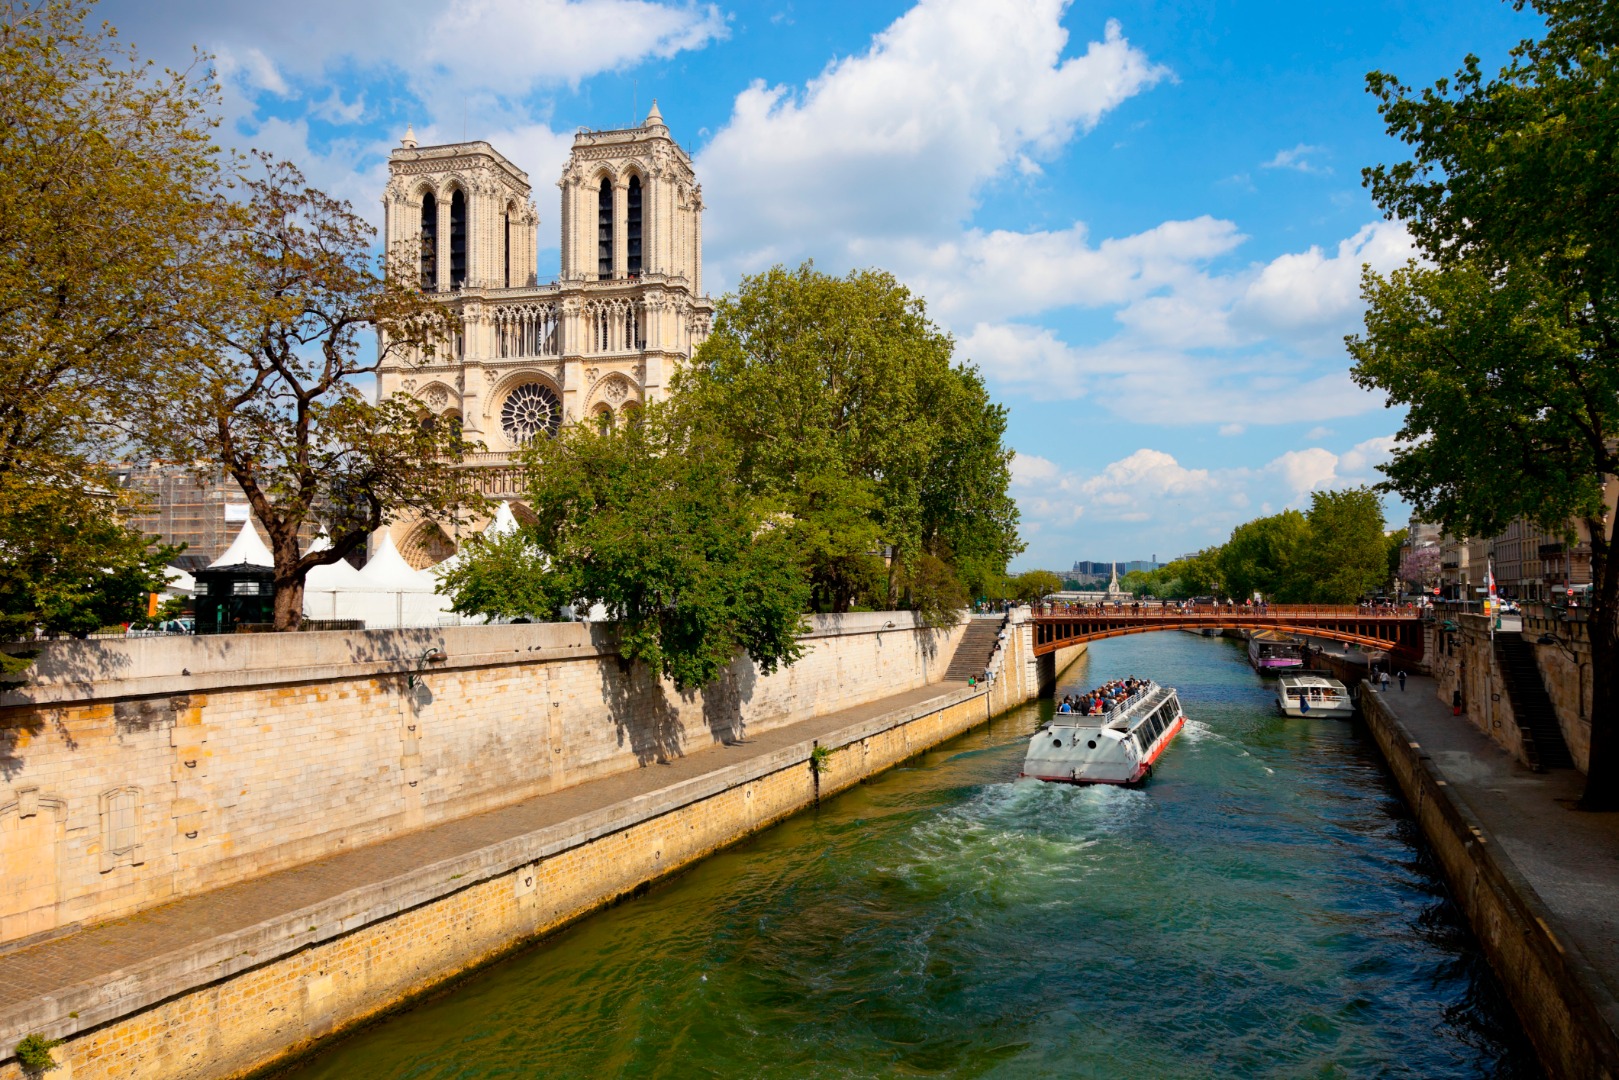 巴黎城市導覽、塞納河游船、艾非爾鐵塔午餐 + 免排隊通關